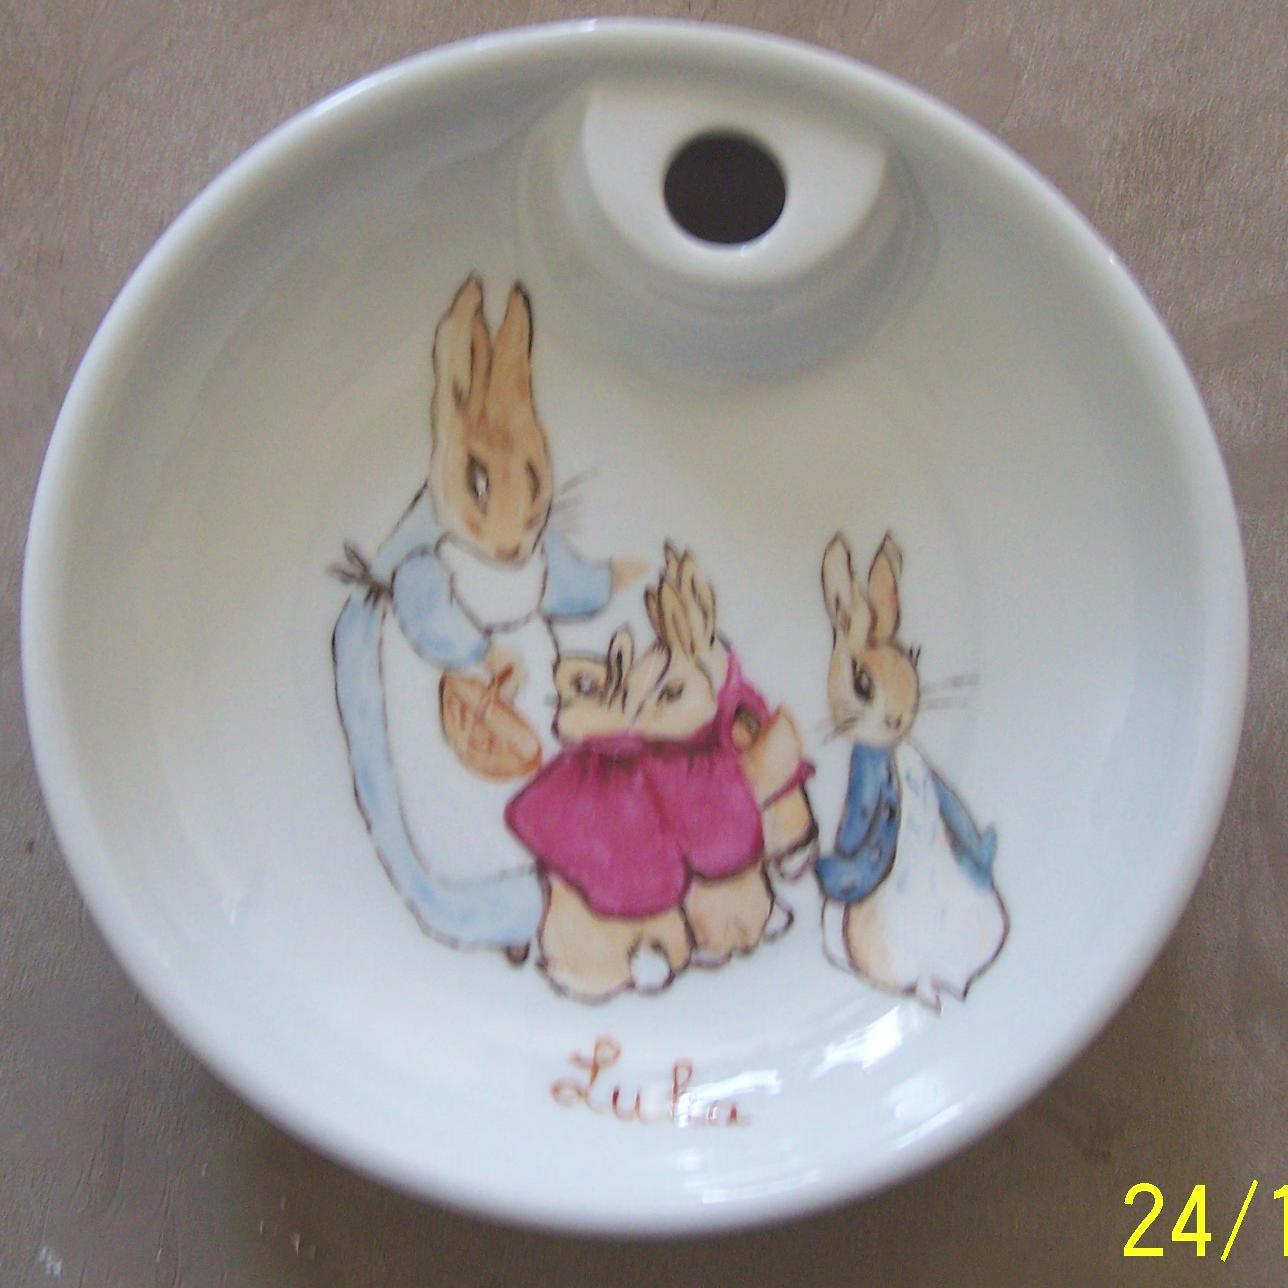 Decoluc-peintre sur porcelaine-travaux d'lves: Assiette pour bb en porcelaine peinte  la main: lapin (par GR)